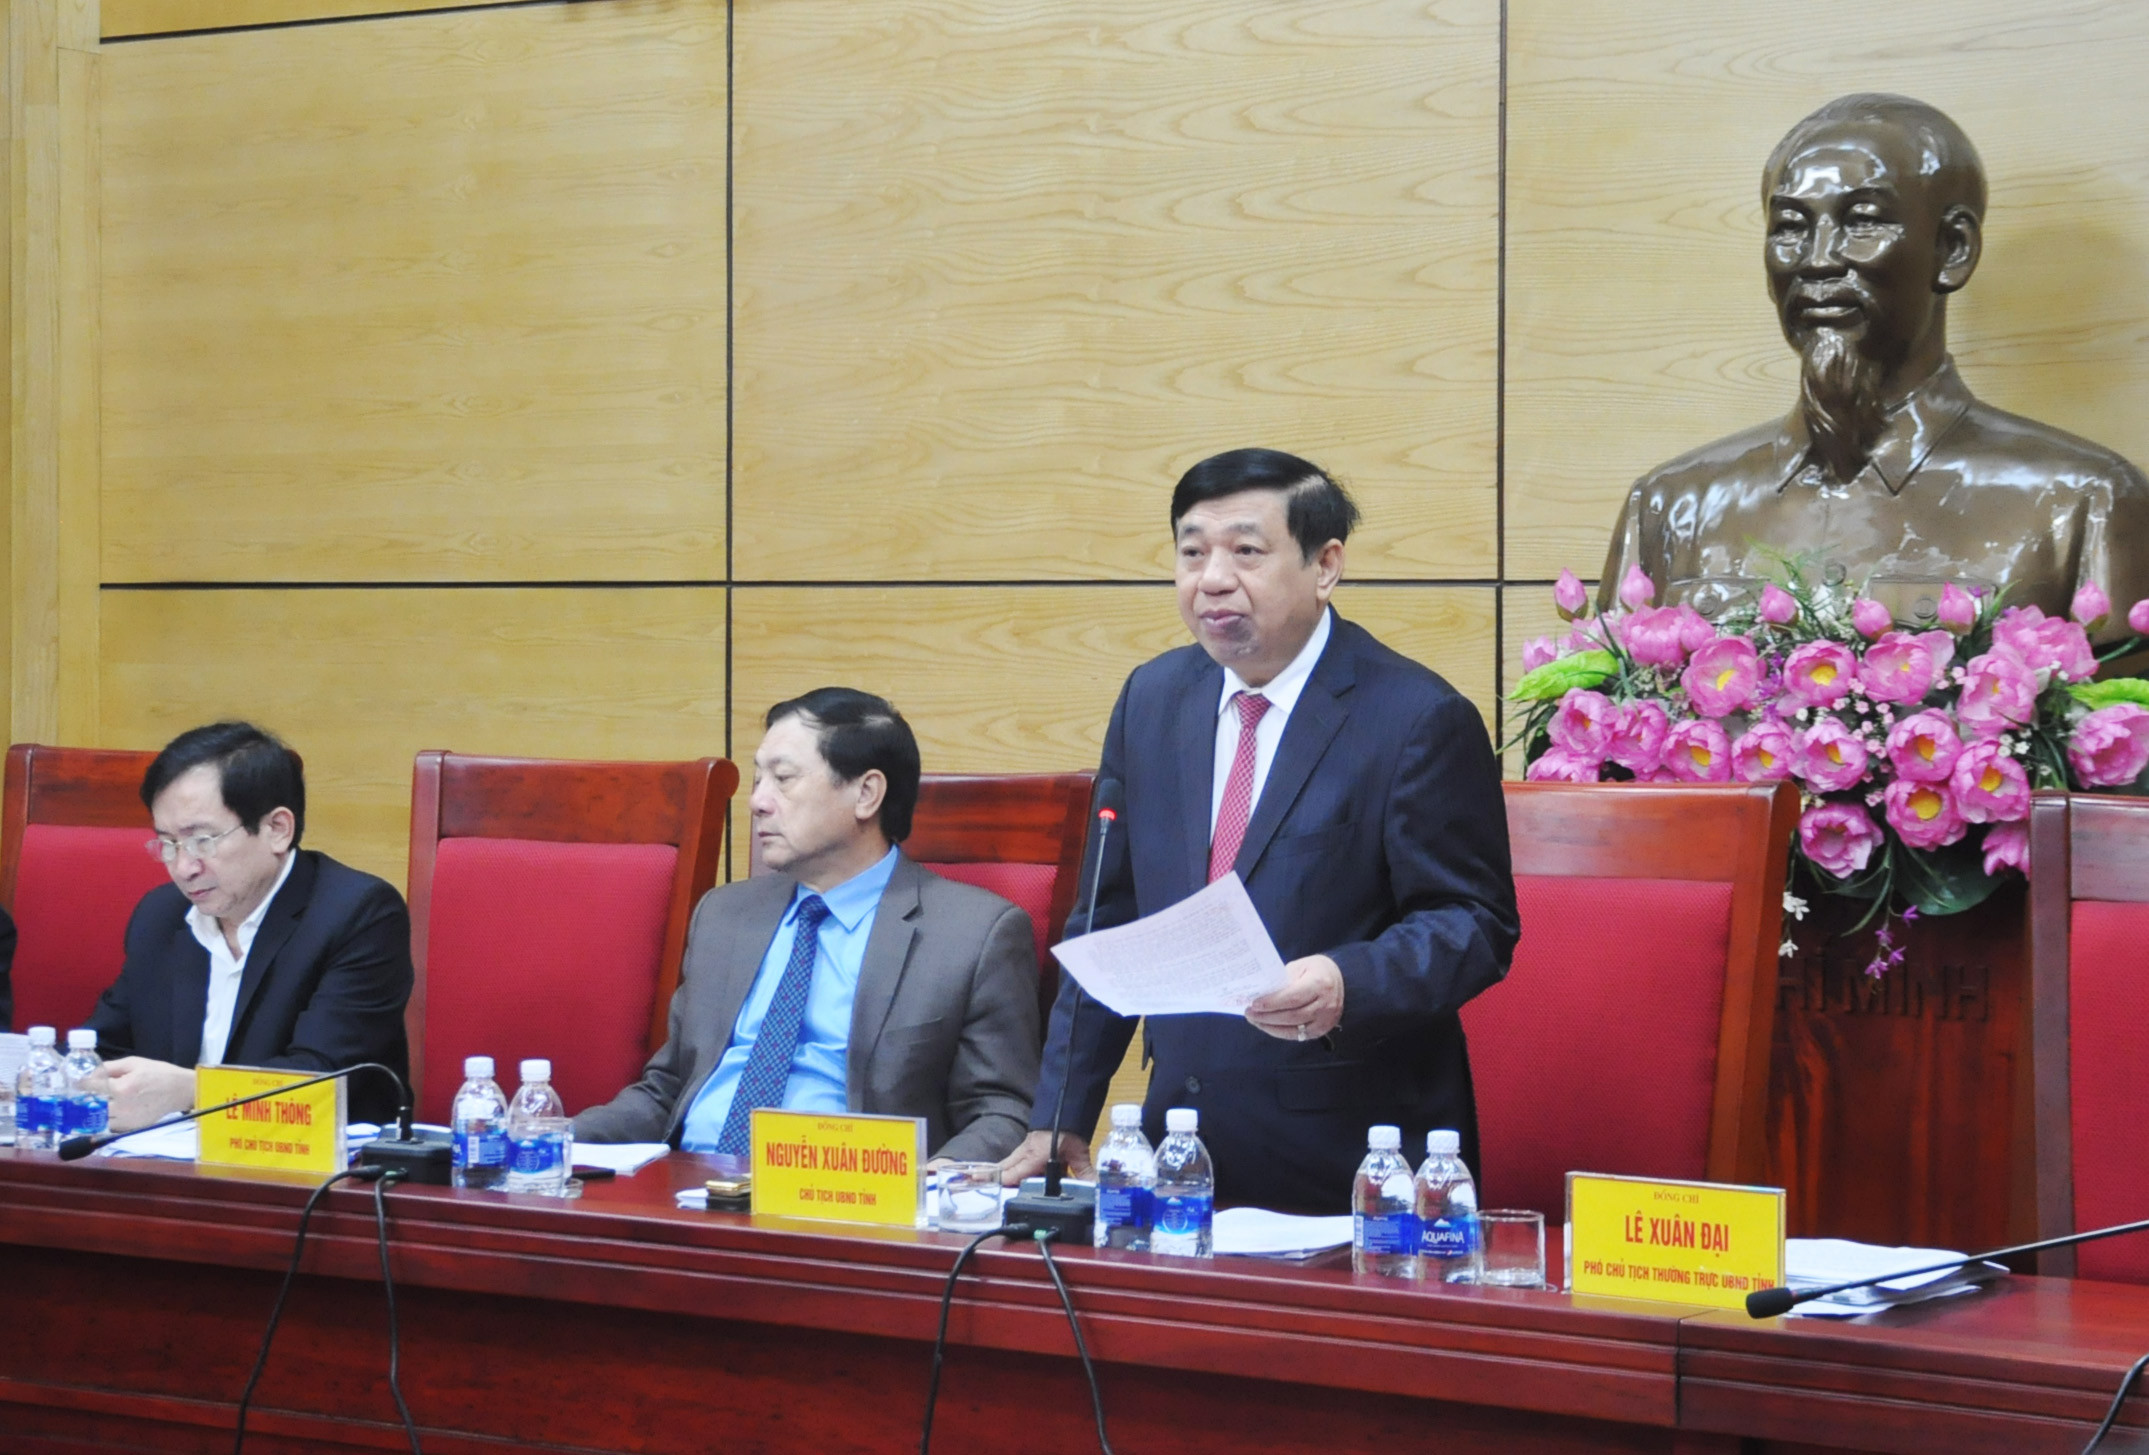 Chủ tịch UBND tỉnh Nguyễn Xuân Đường đề nghị các ngành các cấp triển khai thực hiện tốt kế hoạch kinh tế - xã hội được giao ngay từ những ngày đầu của xuân mới. Ảnh: Thu Huyền